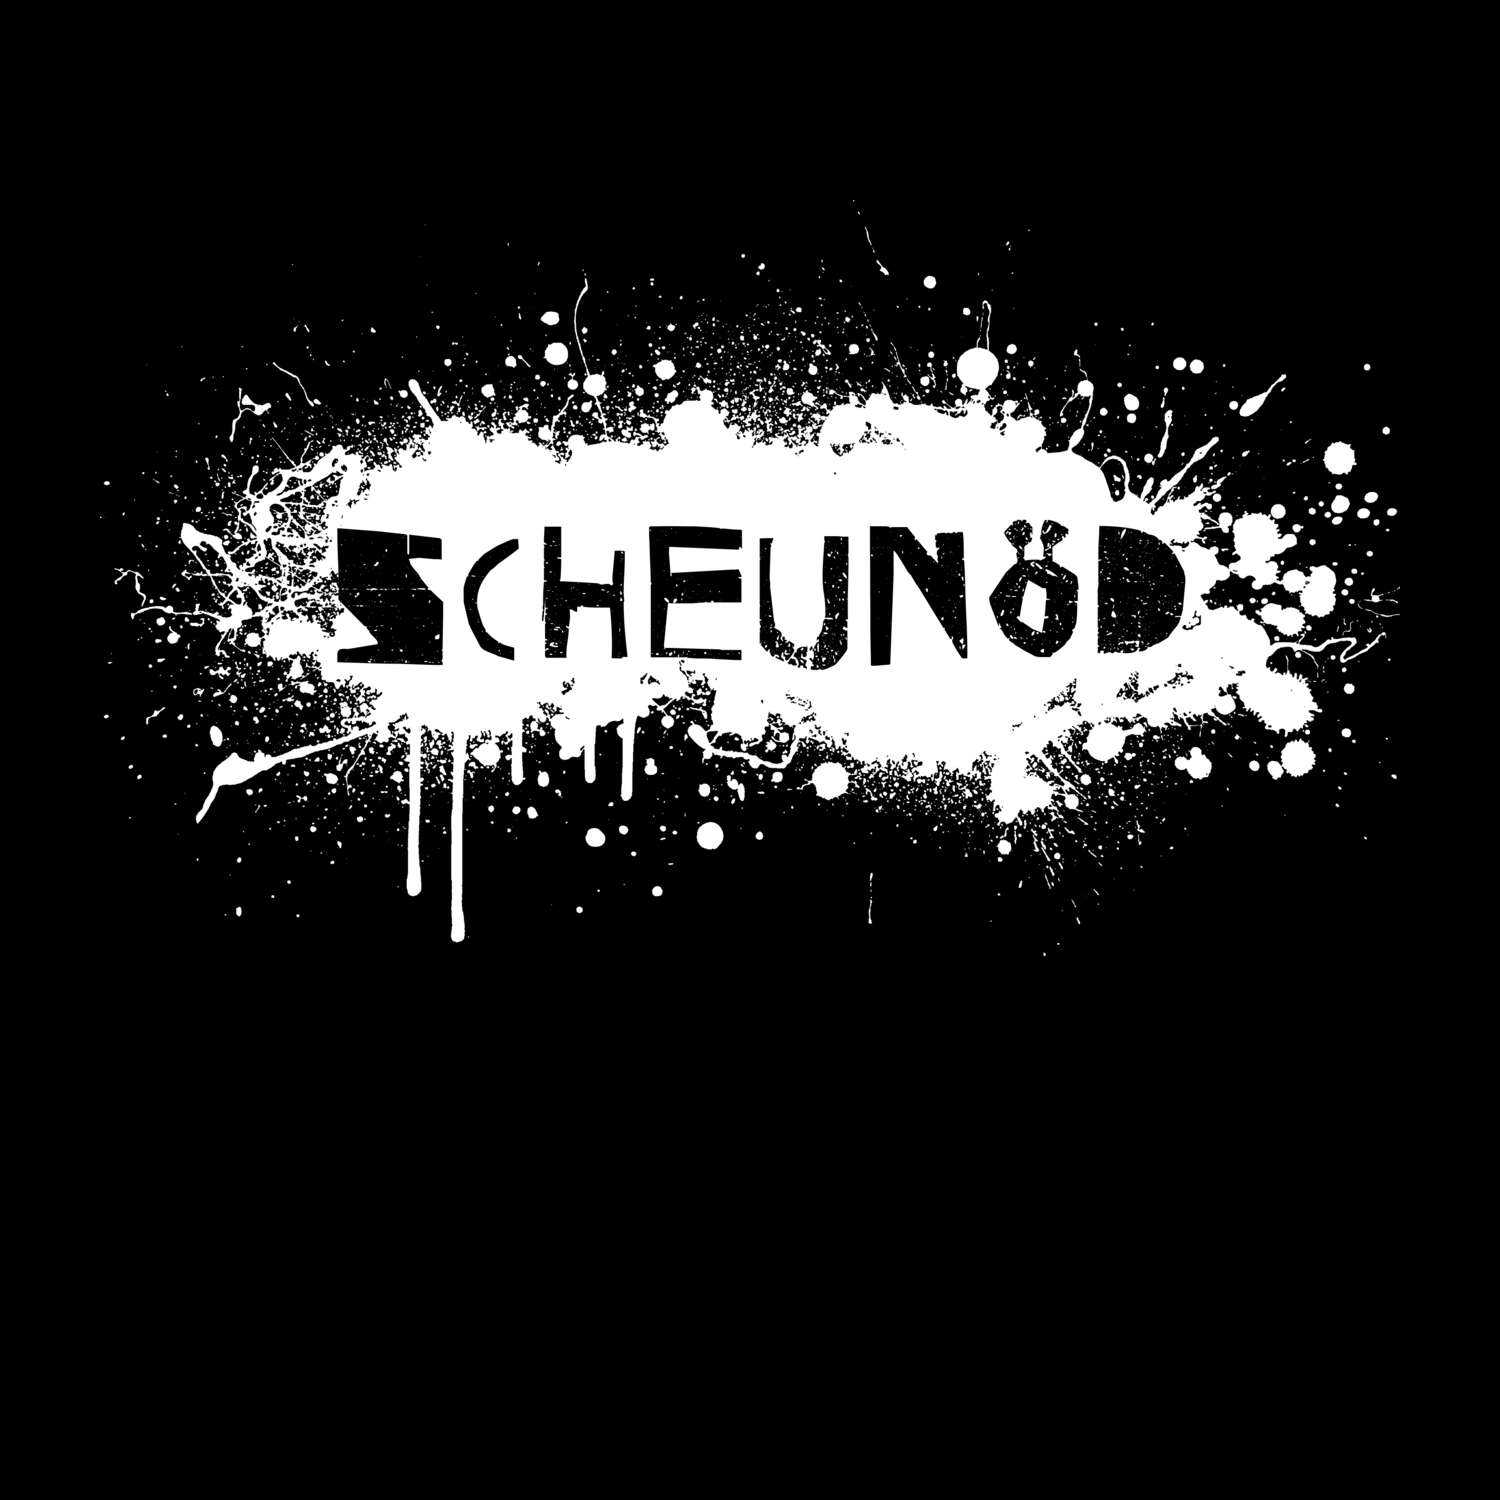 Scheunöd T-Shirt »Paint Splash Punk«